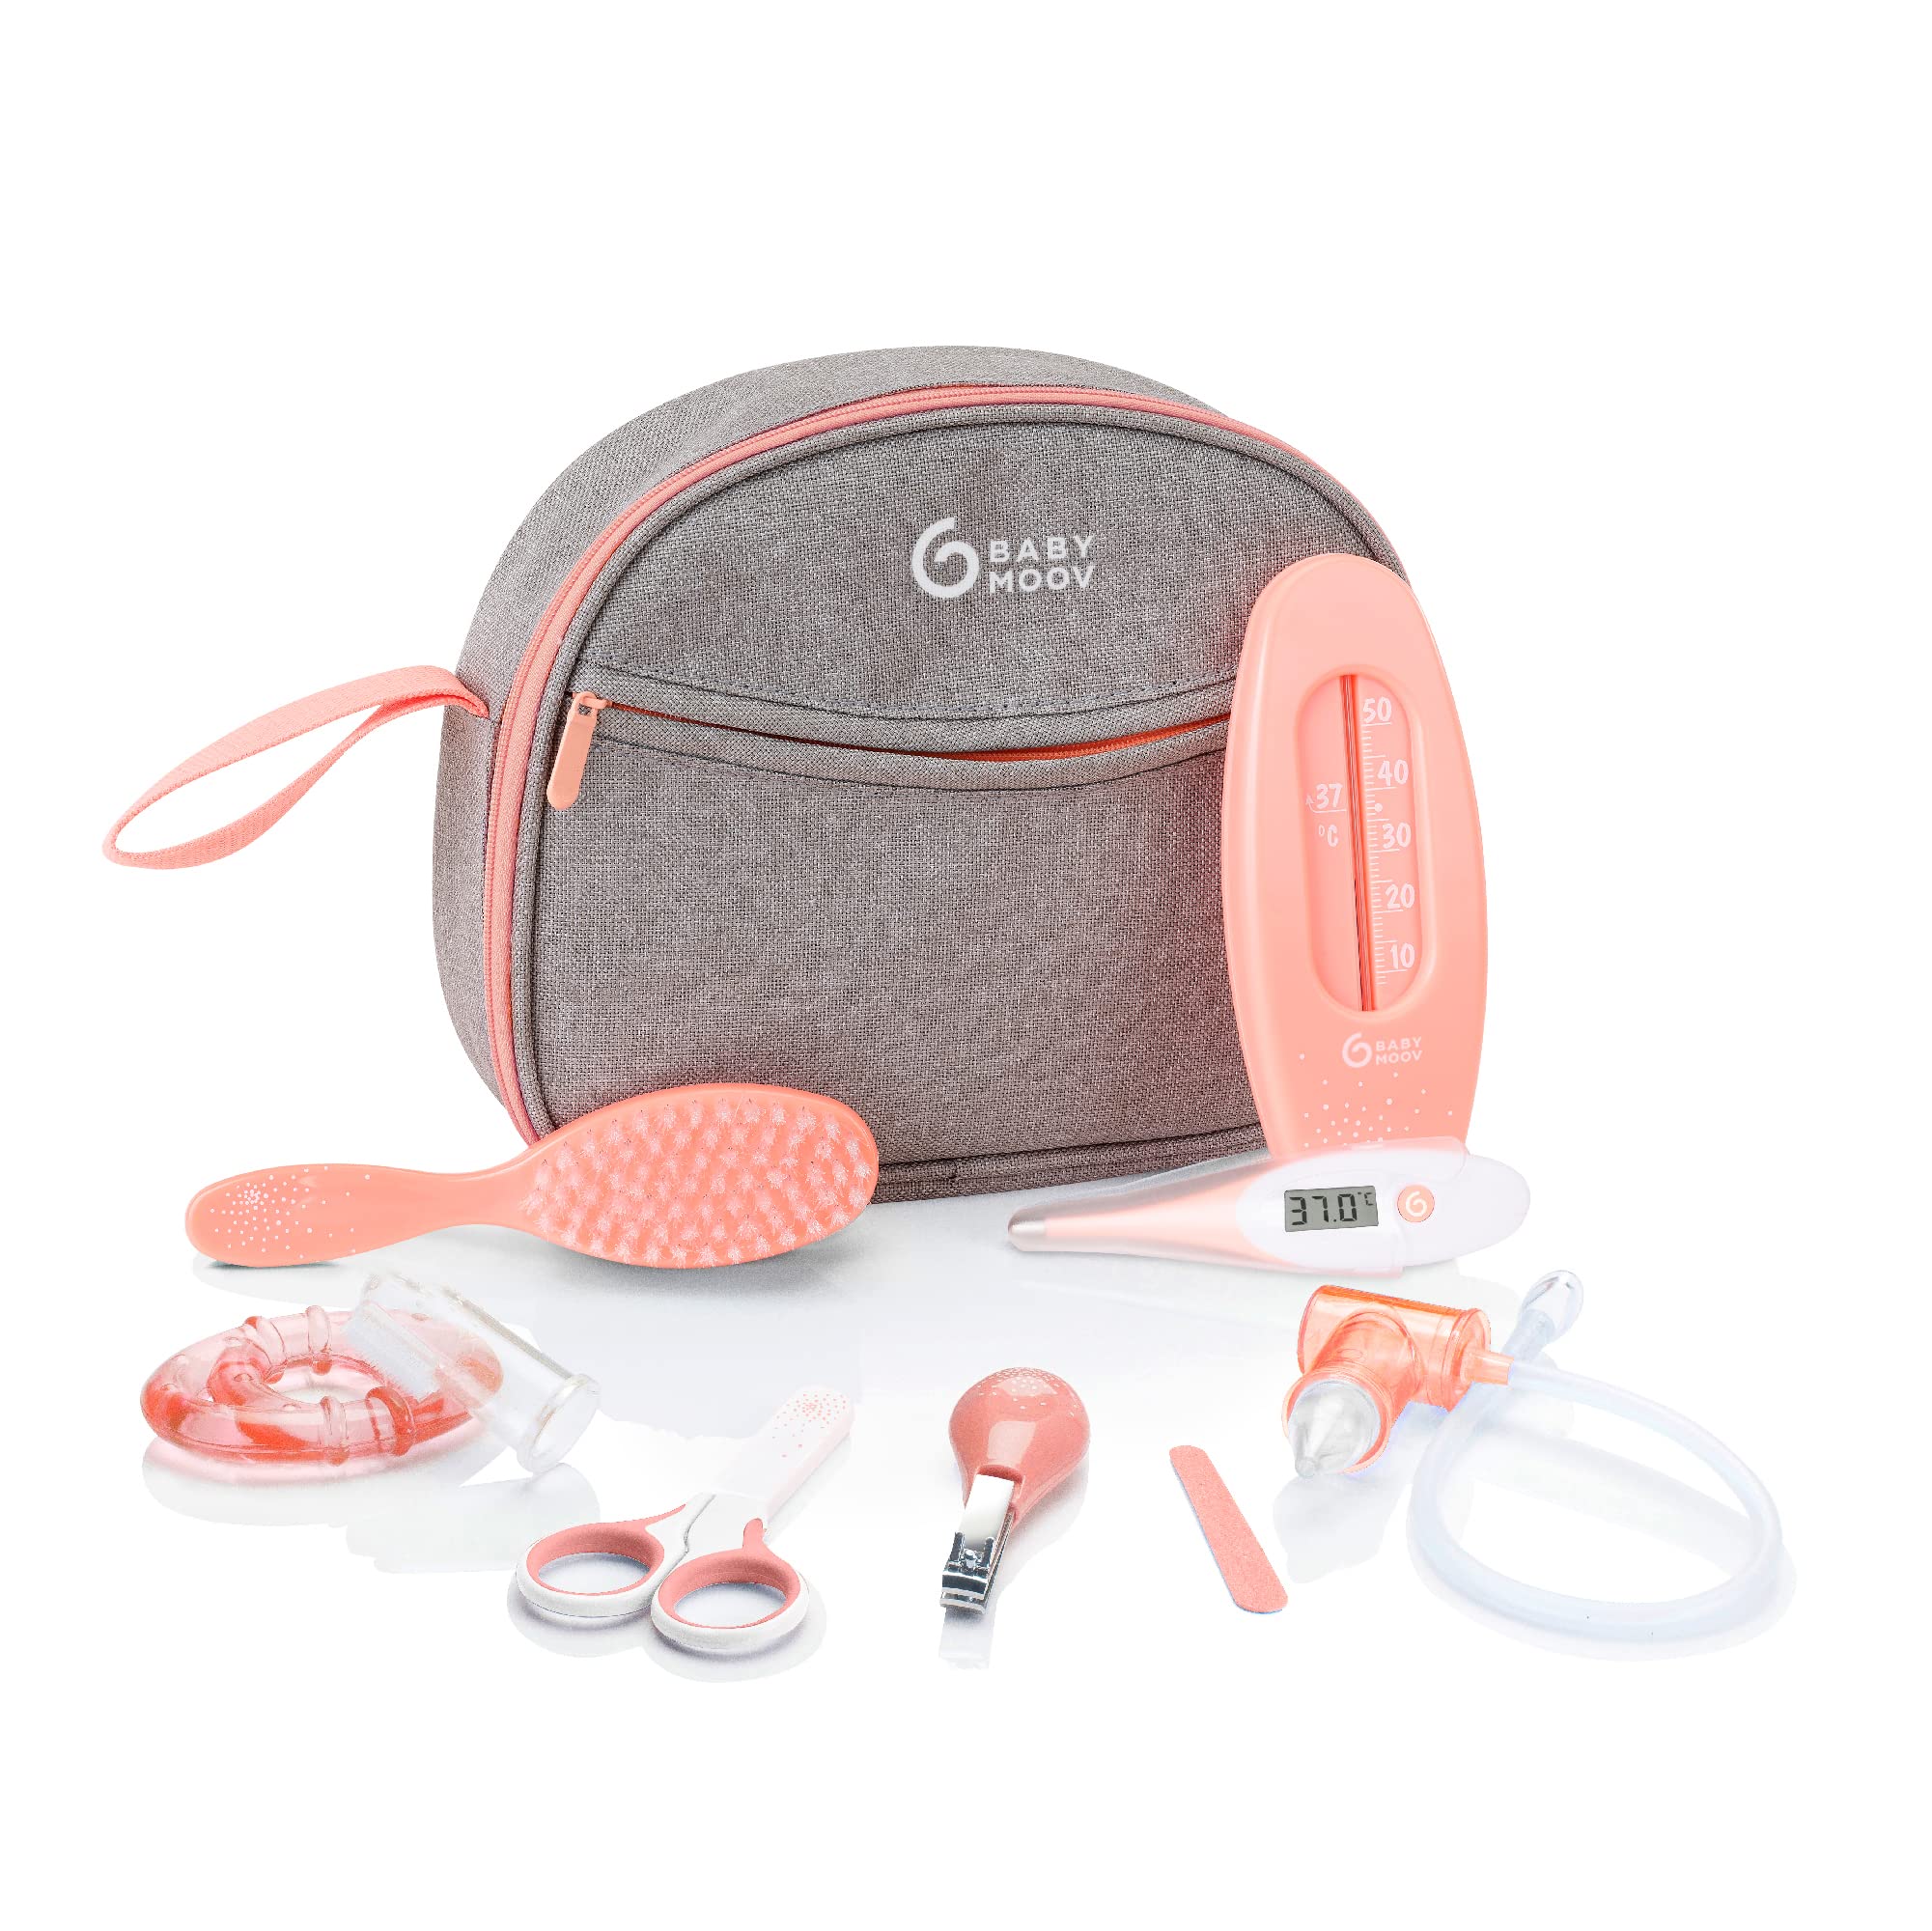 Babymoov Baby-Kulturtasche - Pflege-Set, für Babys, 9-teilig, mit digitalem Fieberthermometer, Nasensauger, apricot